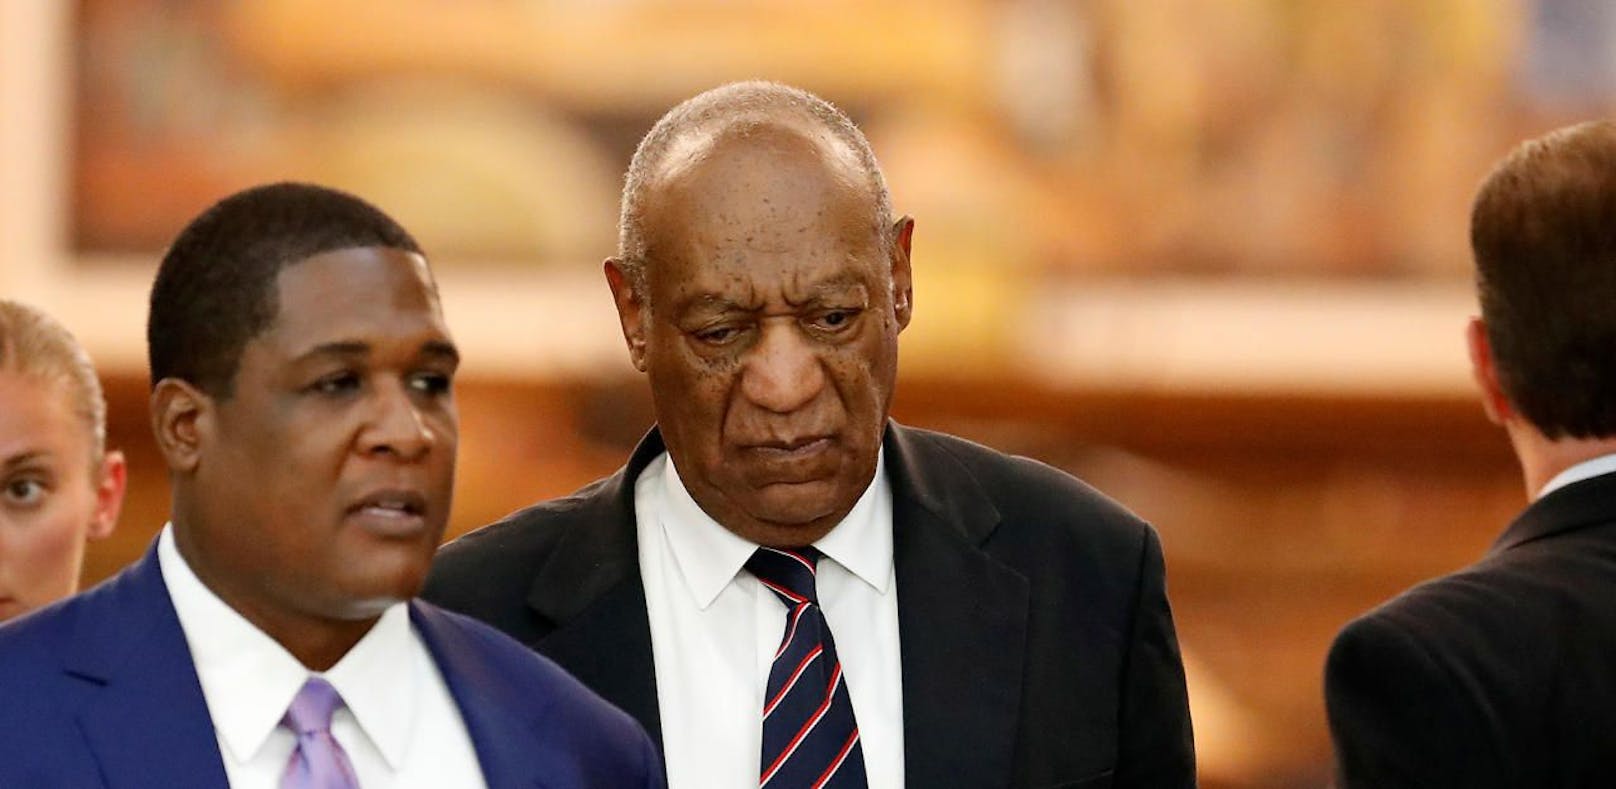 Cosby-Opfer wünscht ihm Vergewaltigung im Häfn